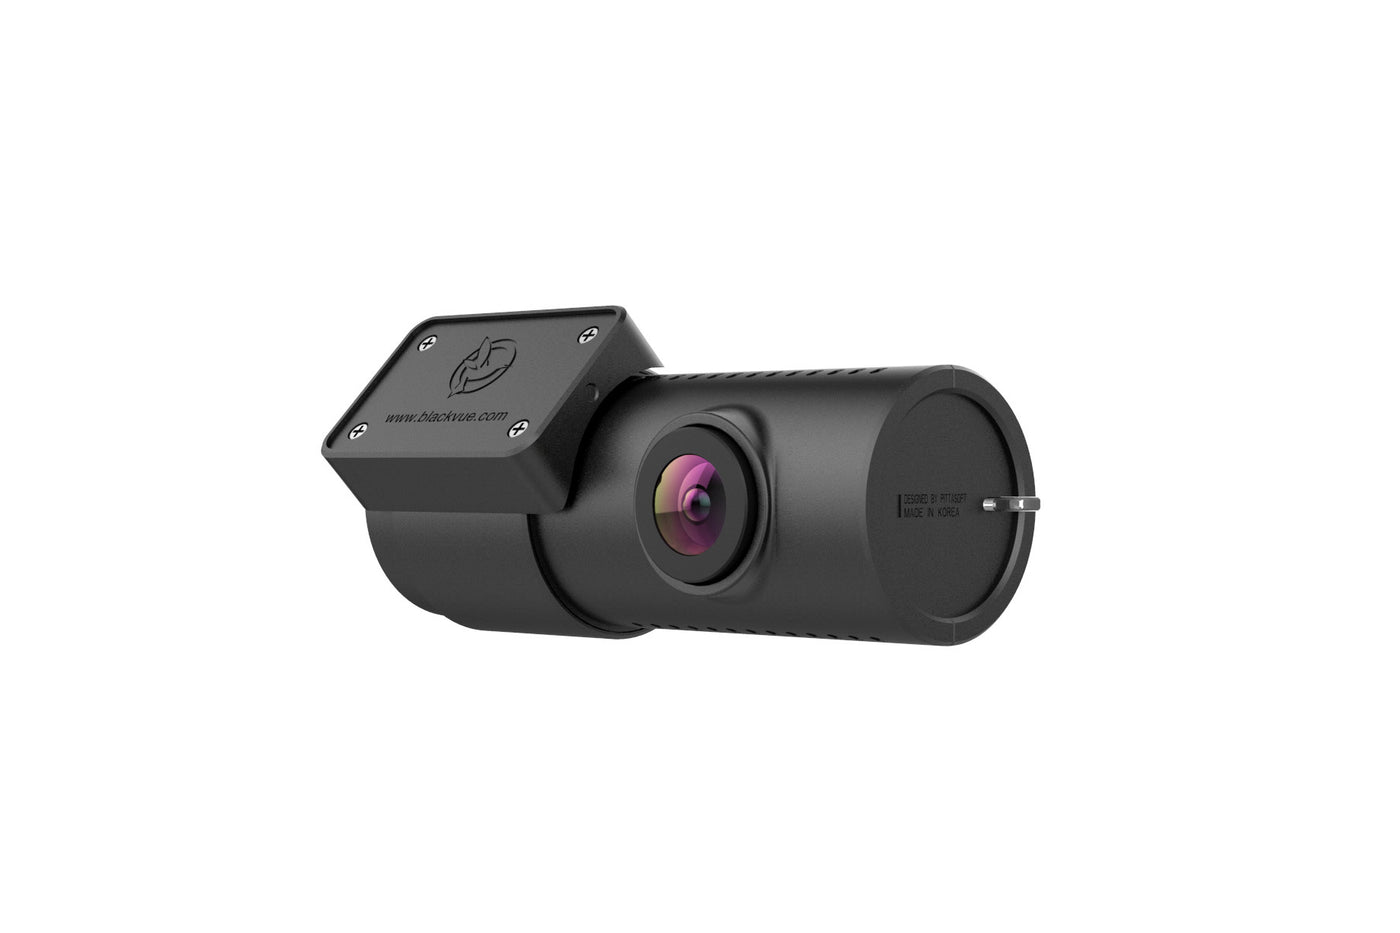 https://blackvuenorthamerica.com/cdn/shop/products/blackvuenorthamerica.com-blackvue-rc110f-c-rear-camera-upgrade-kit-for-dr750x-plus-1920px-4_1400x.jpg?v=1661885600